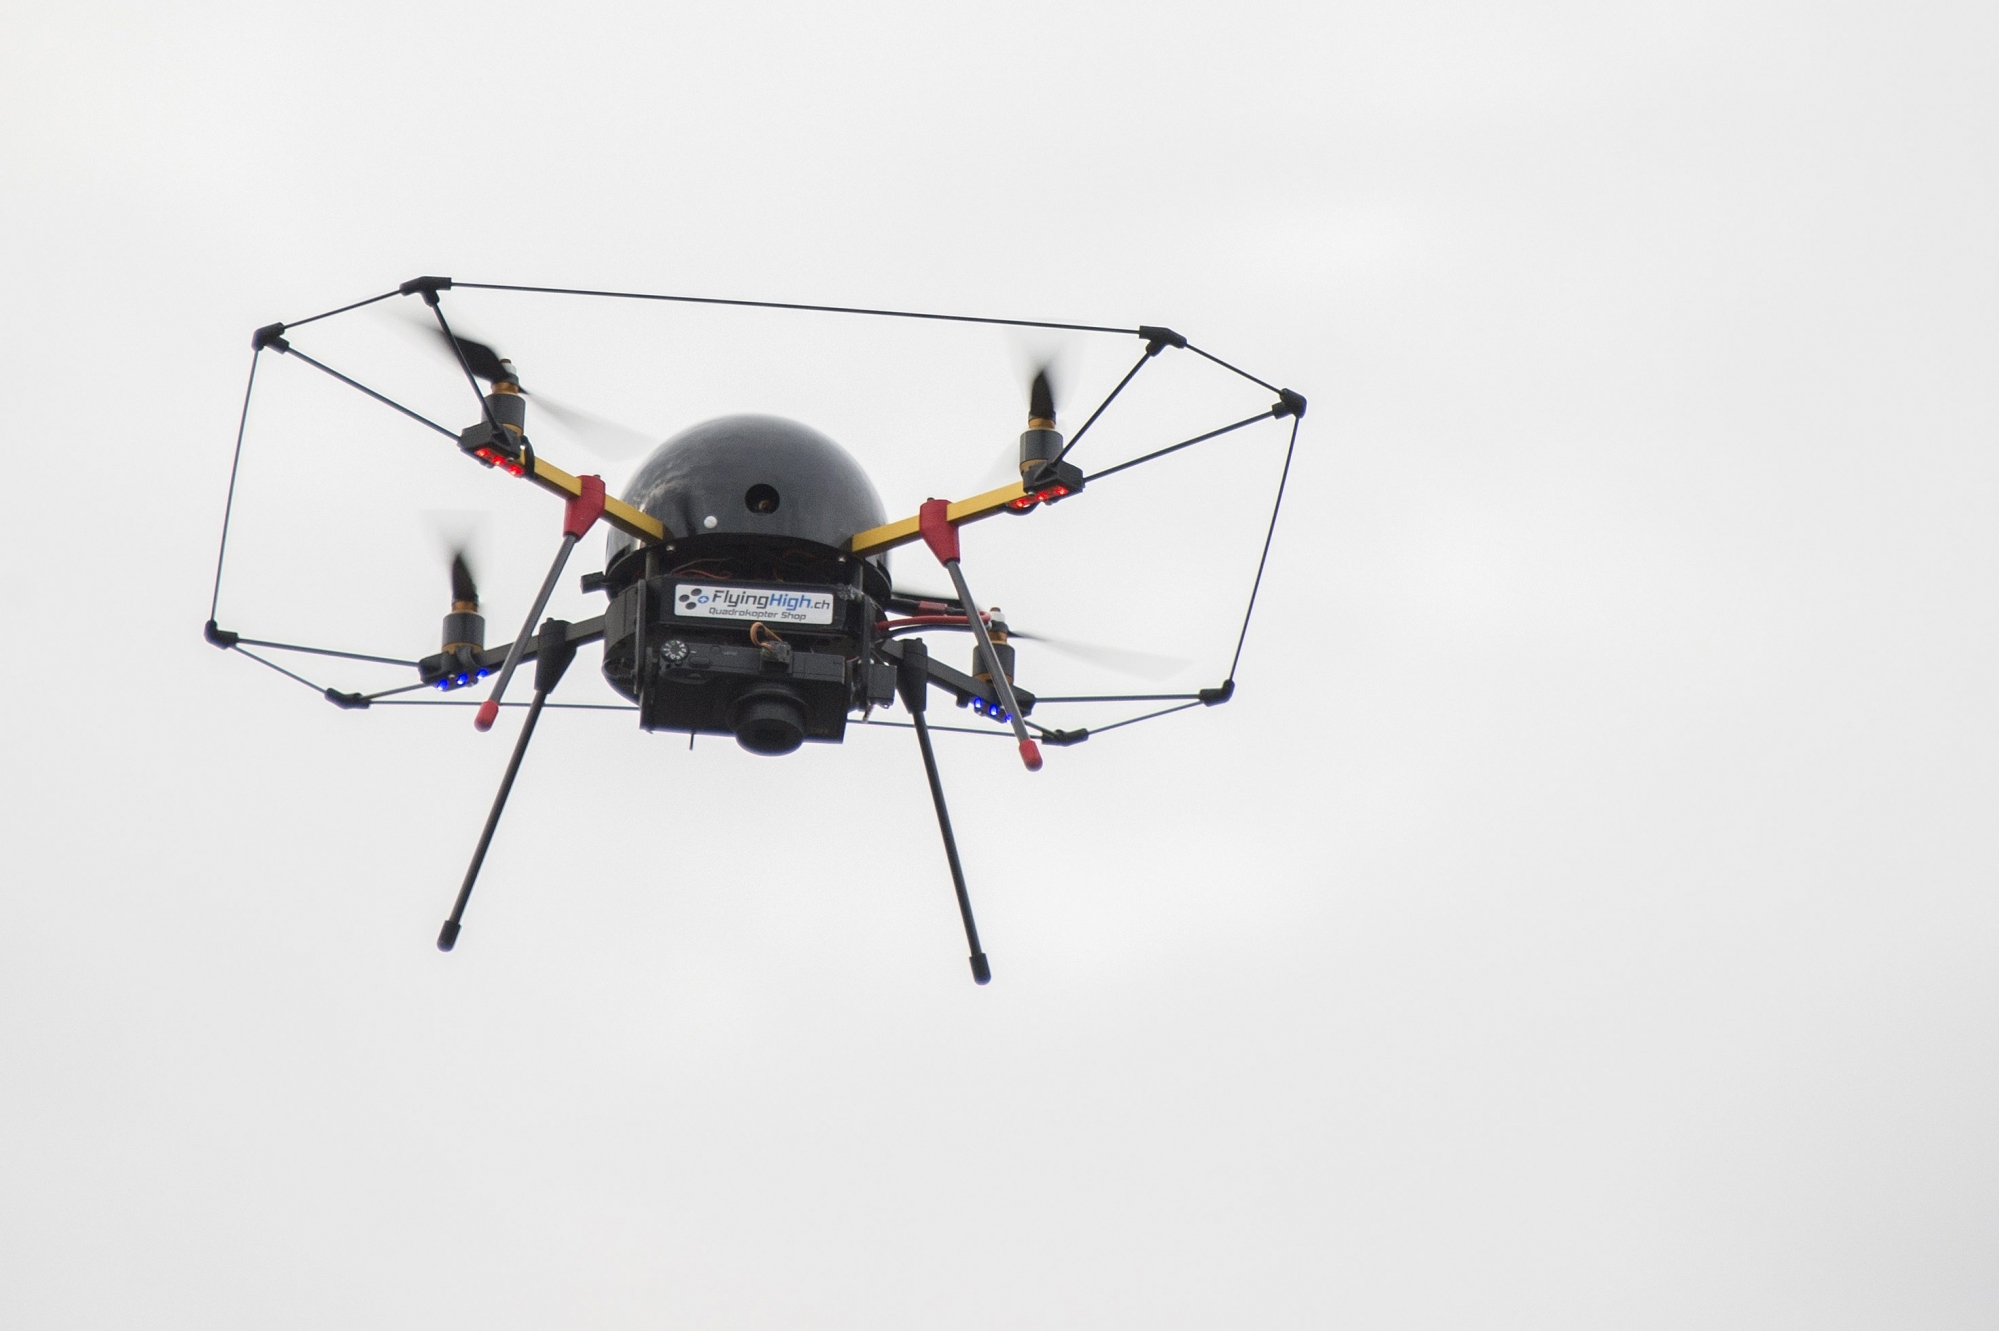 Un drone, ici un de ceux appartenant à la Police neuchâteloise, a provoqué un dérangement auprès de rapaces la semaine dernière au centre de Neuchâtel, selon un habitant des lieux. (Image d'illustration)